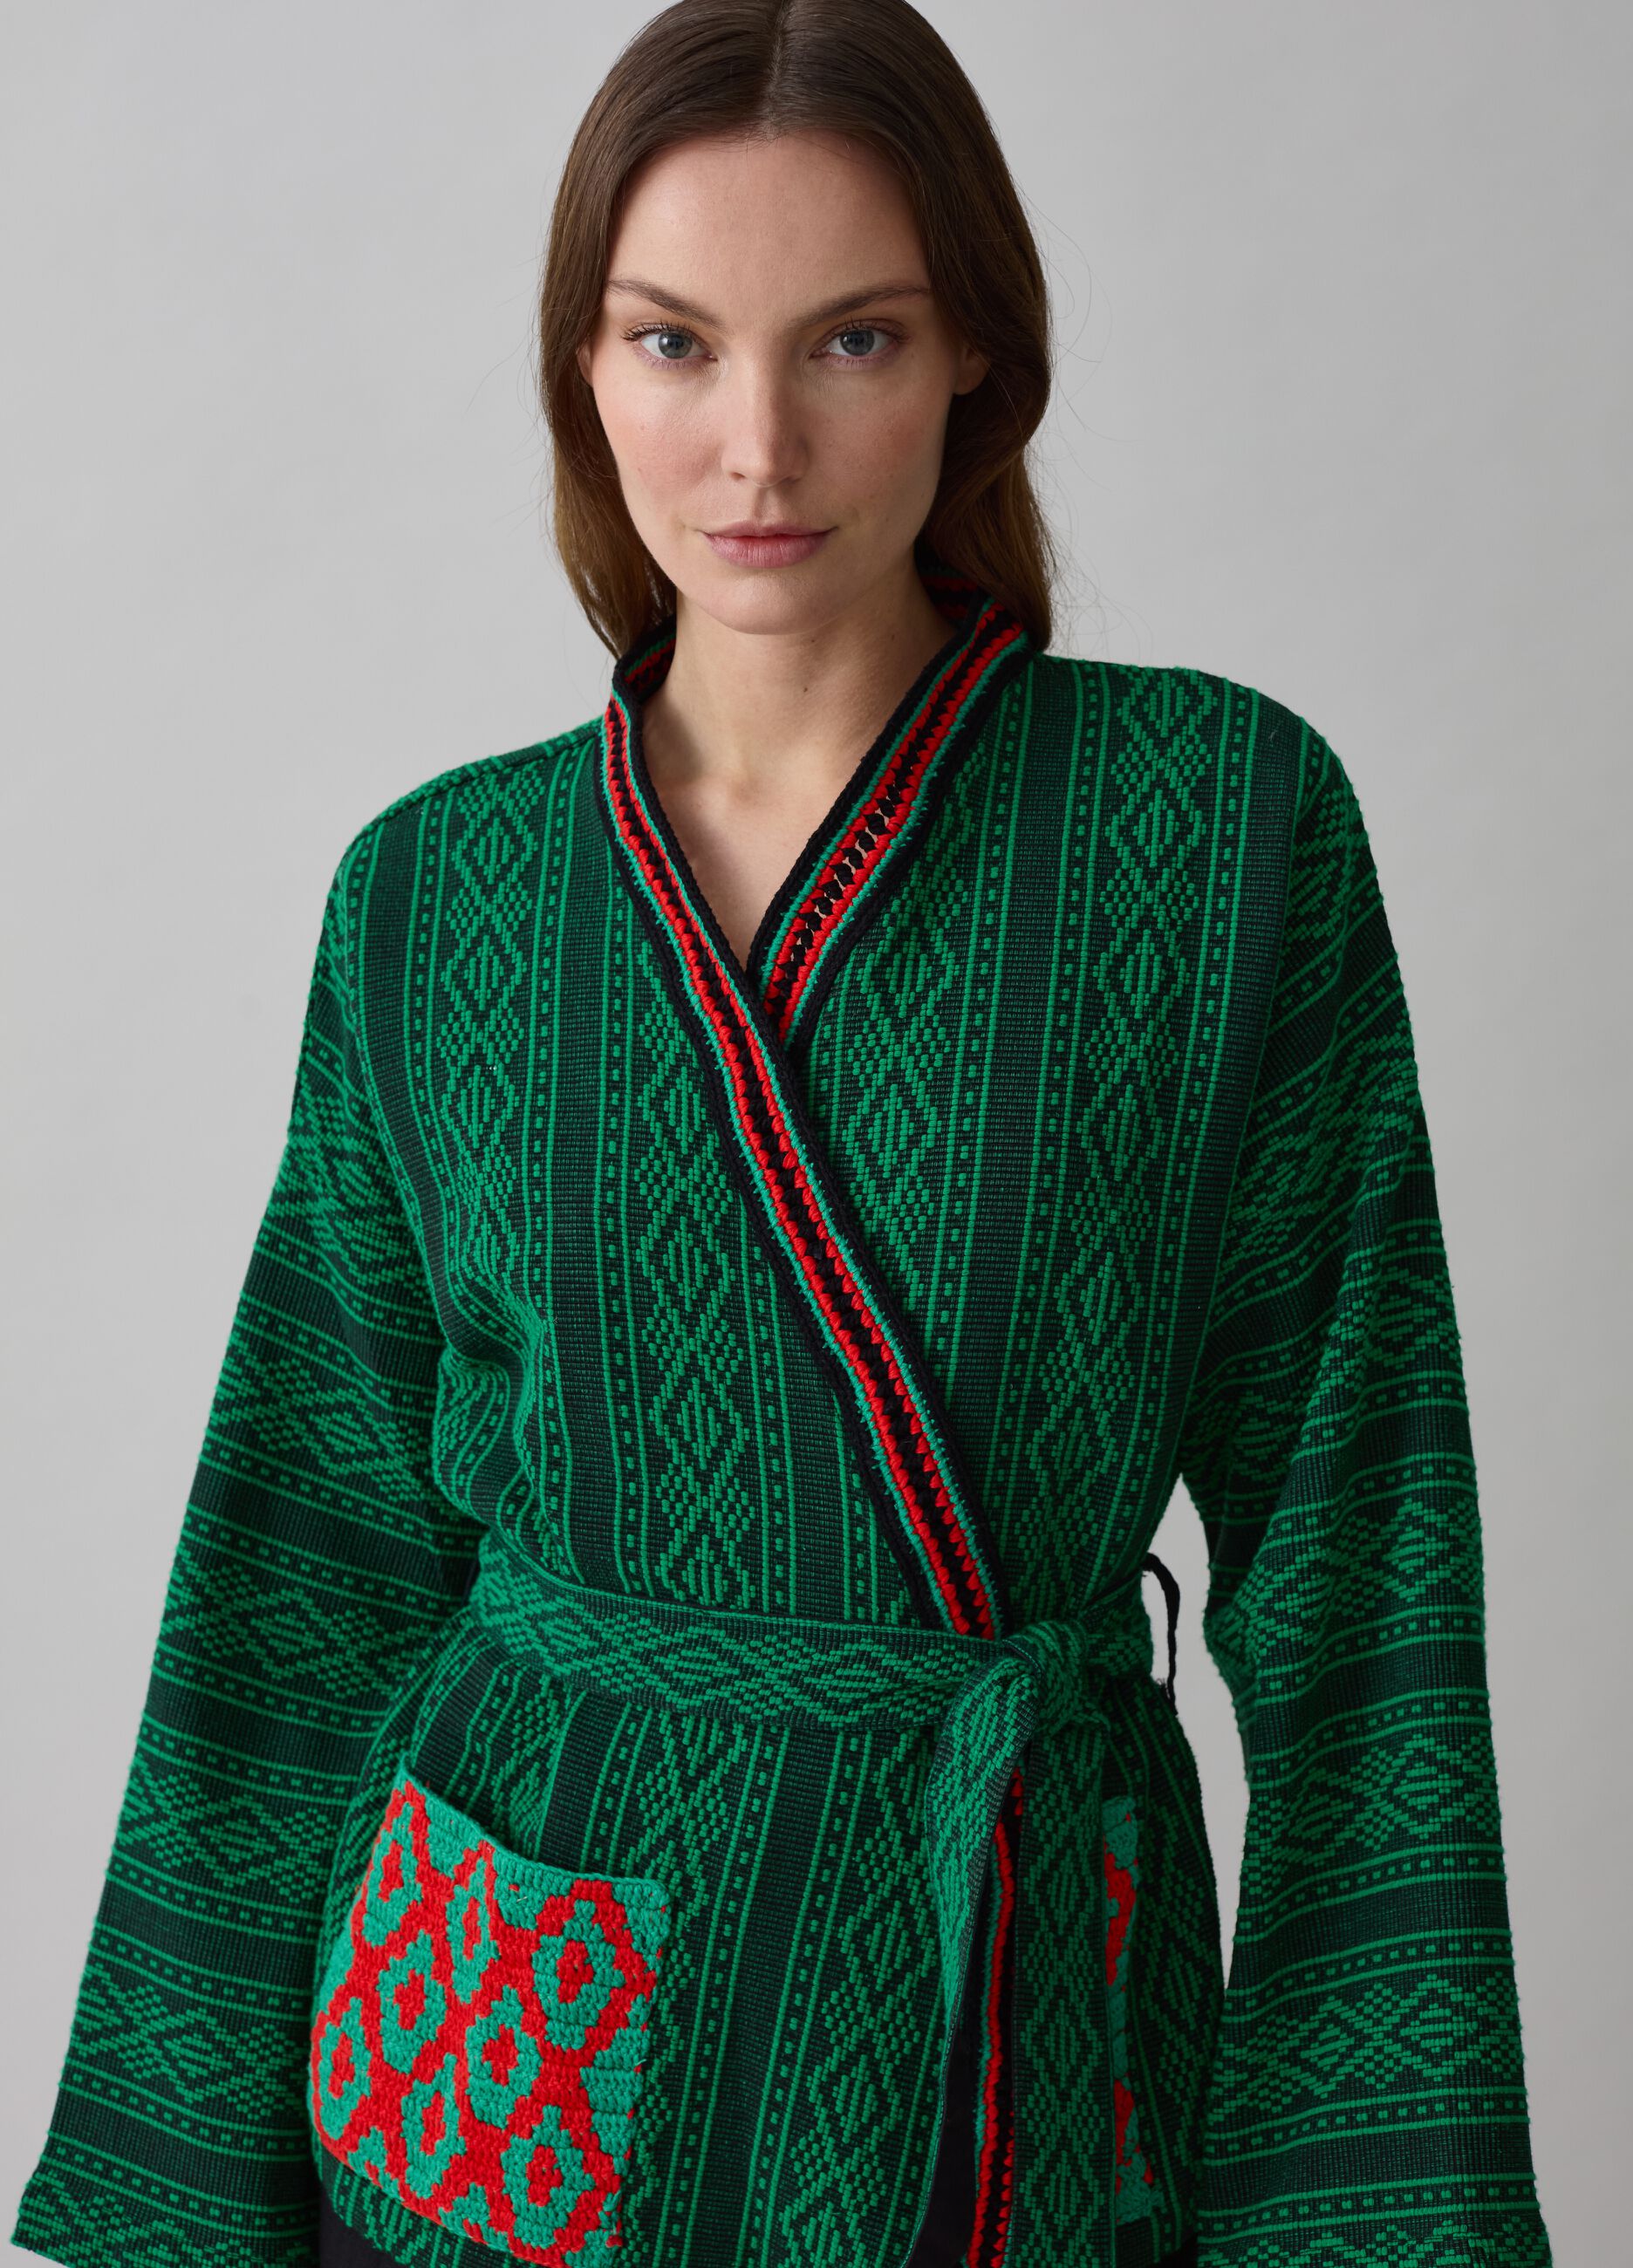 Kimono with ethnic designs